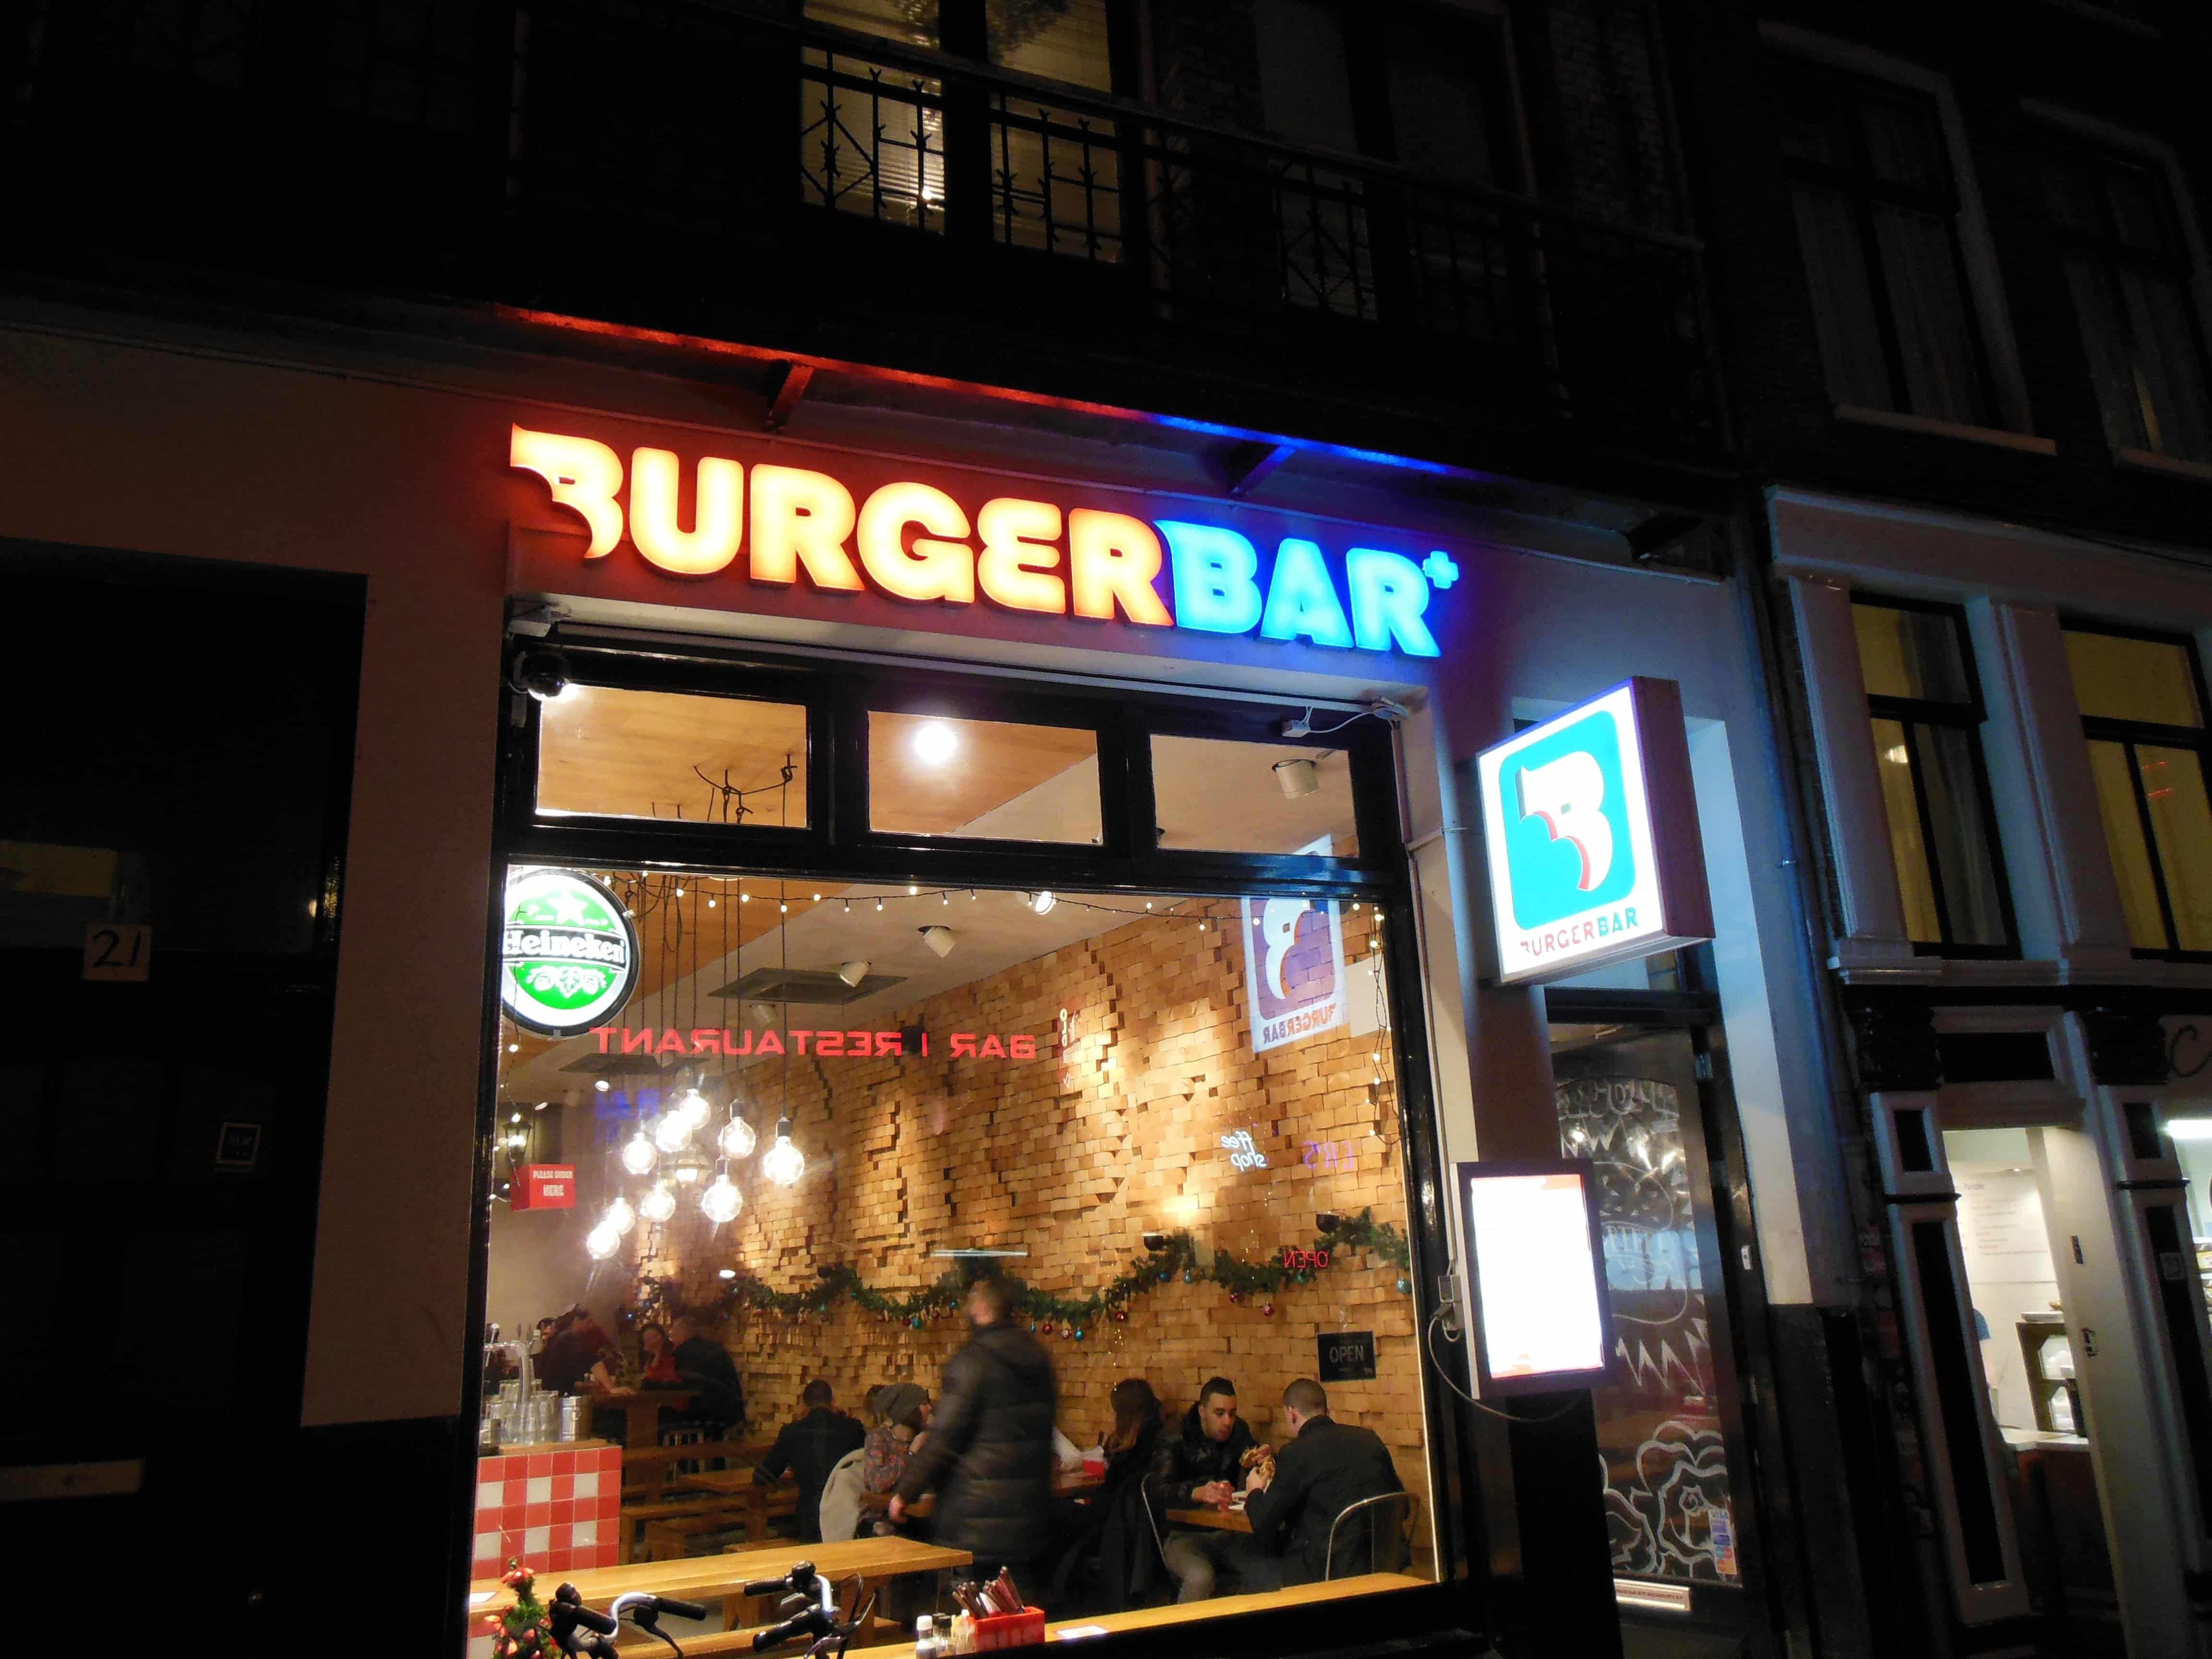 Bilder von der Amsterdam Burger Bar von außen, nachts gegen 1 Uhr